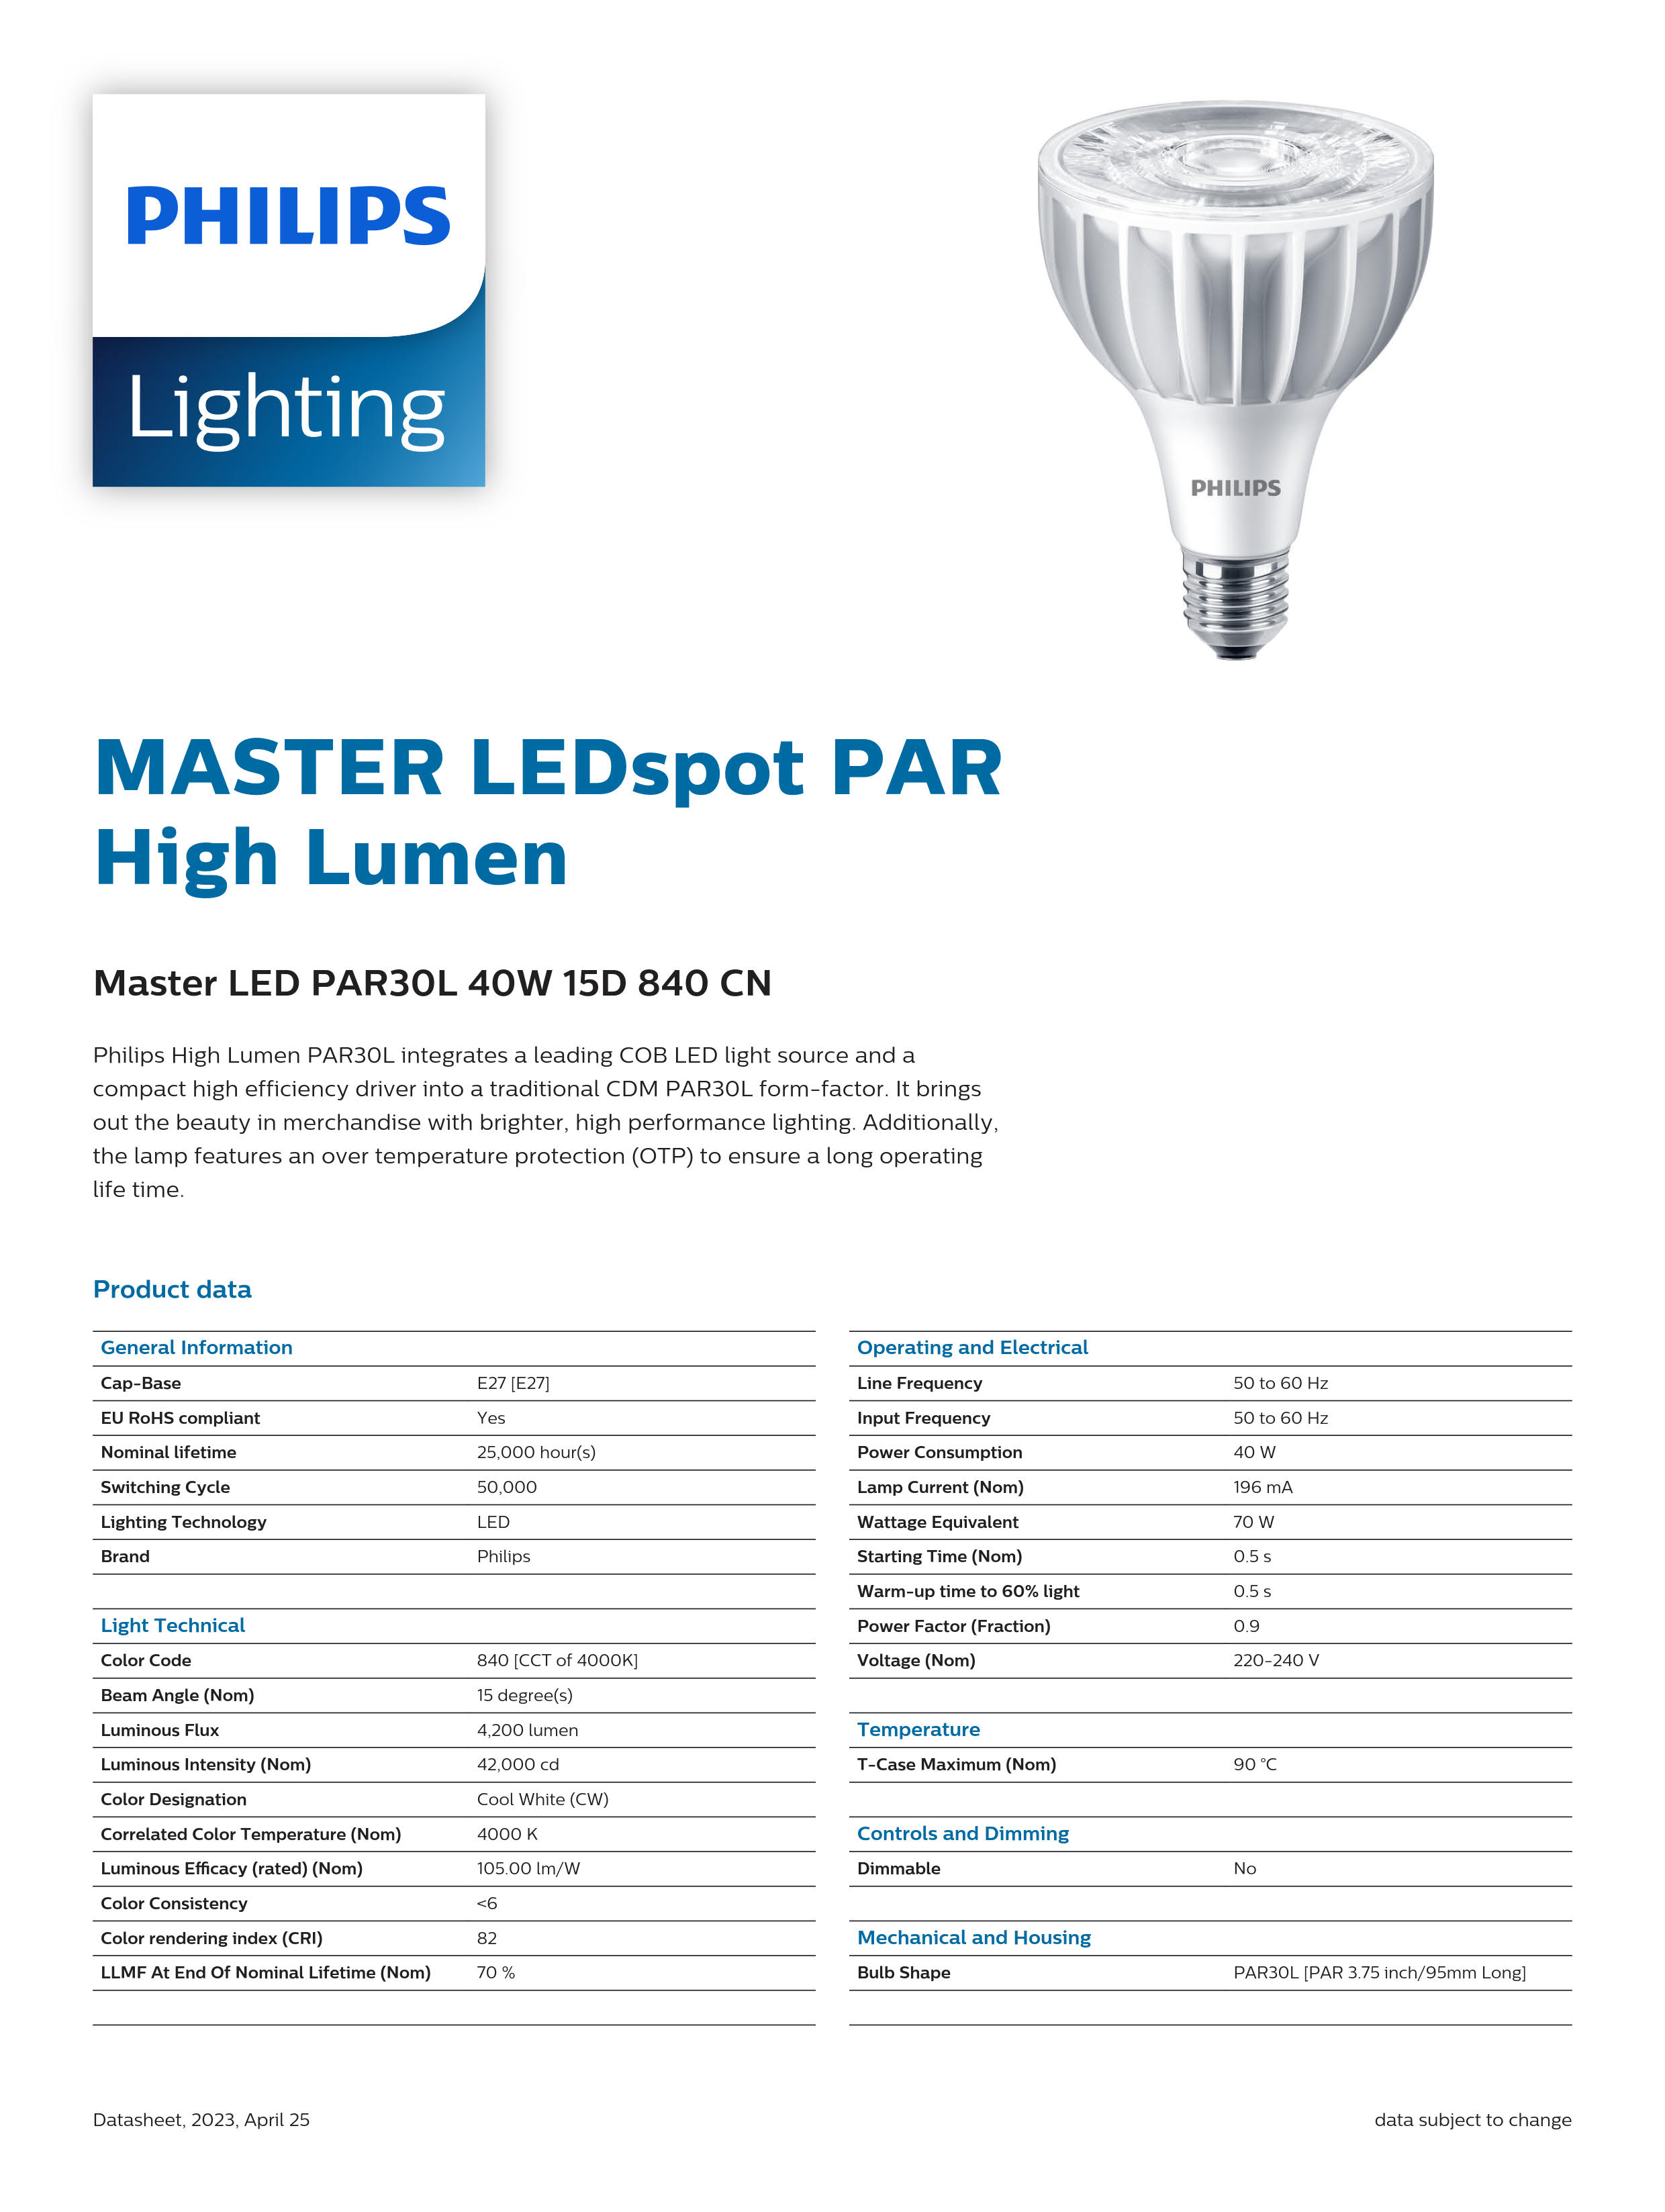 PHILIPS Master LED PAR30L 40W 15D 840 CN 929001374510